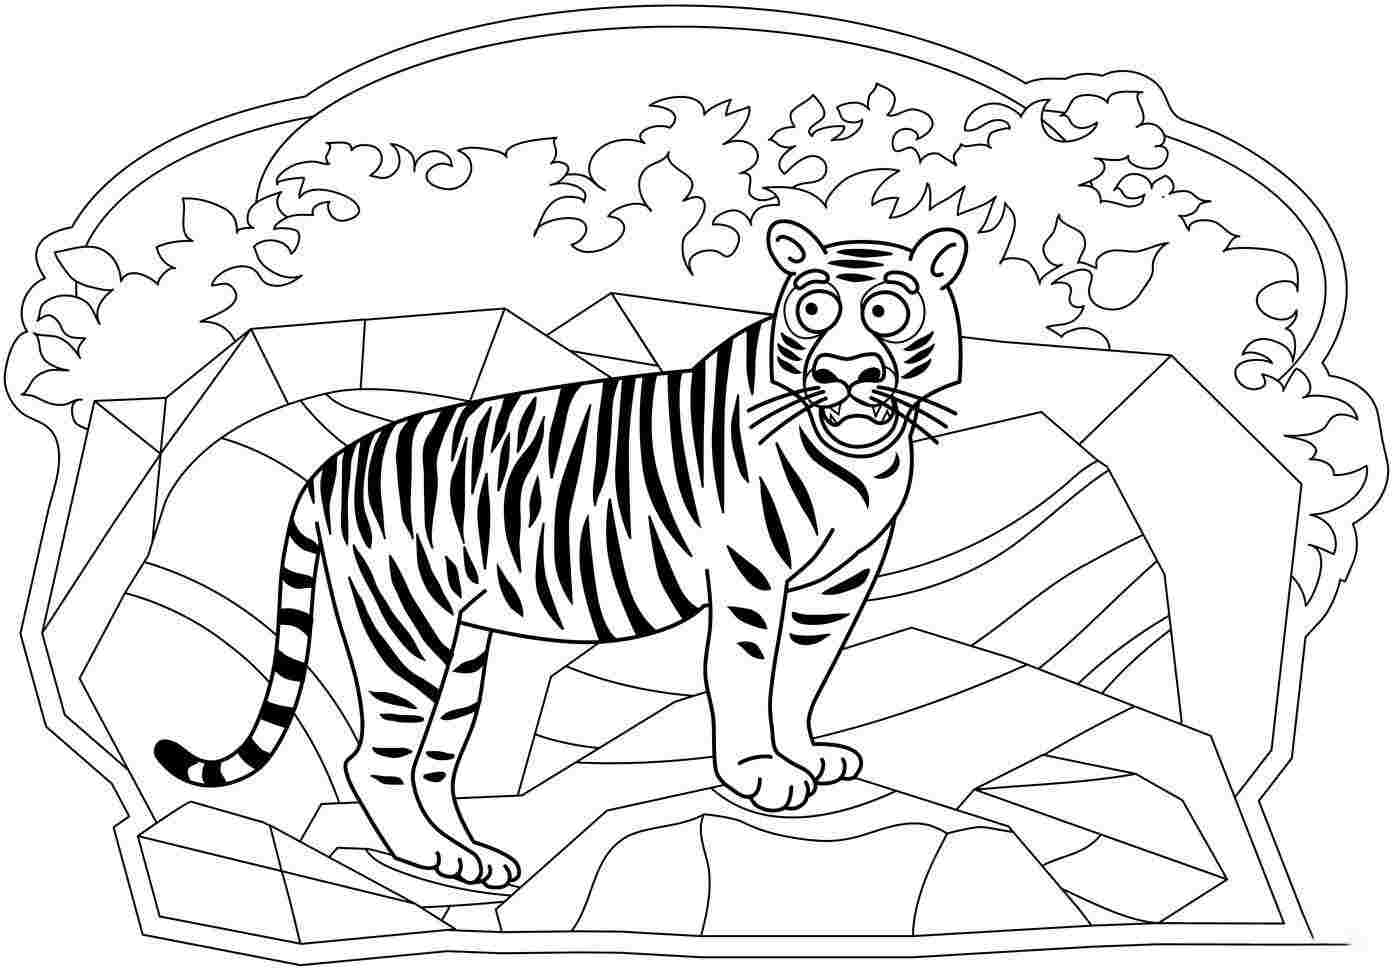 Der erschrockene Blick des Tigers auf die Klippe von Tiger